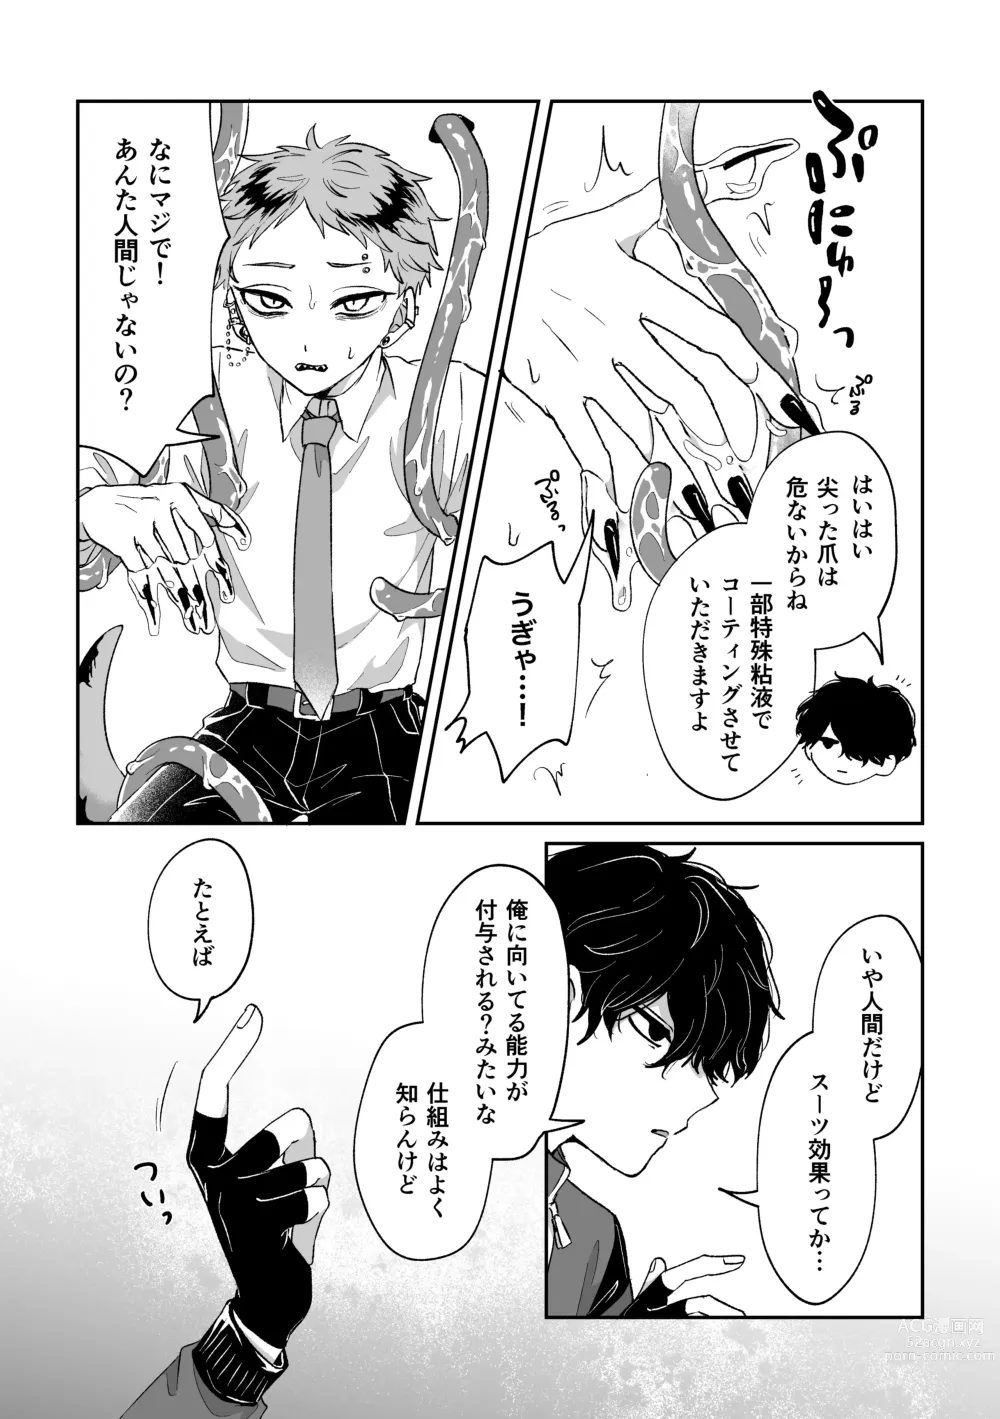 Page 5 of doujinshi Warui kedo Kore Ero Manga nanda yo ne